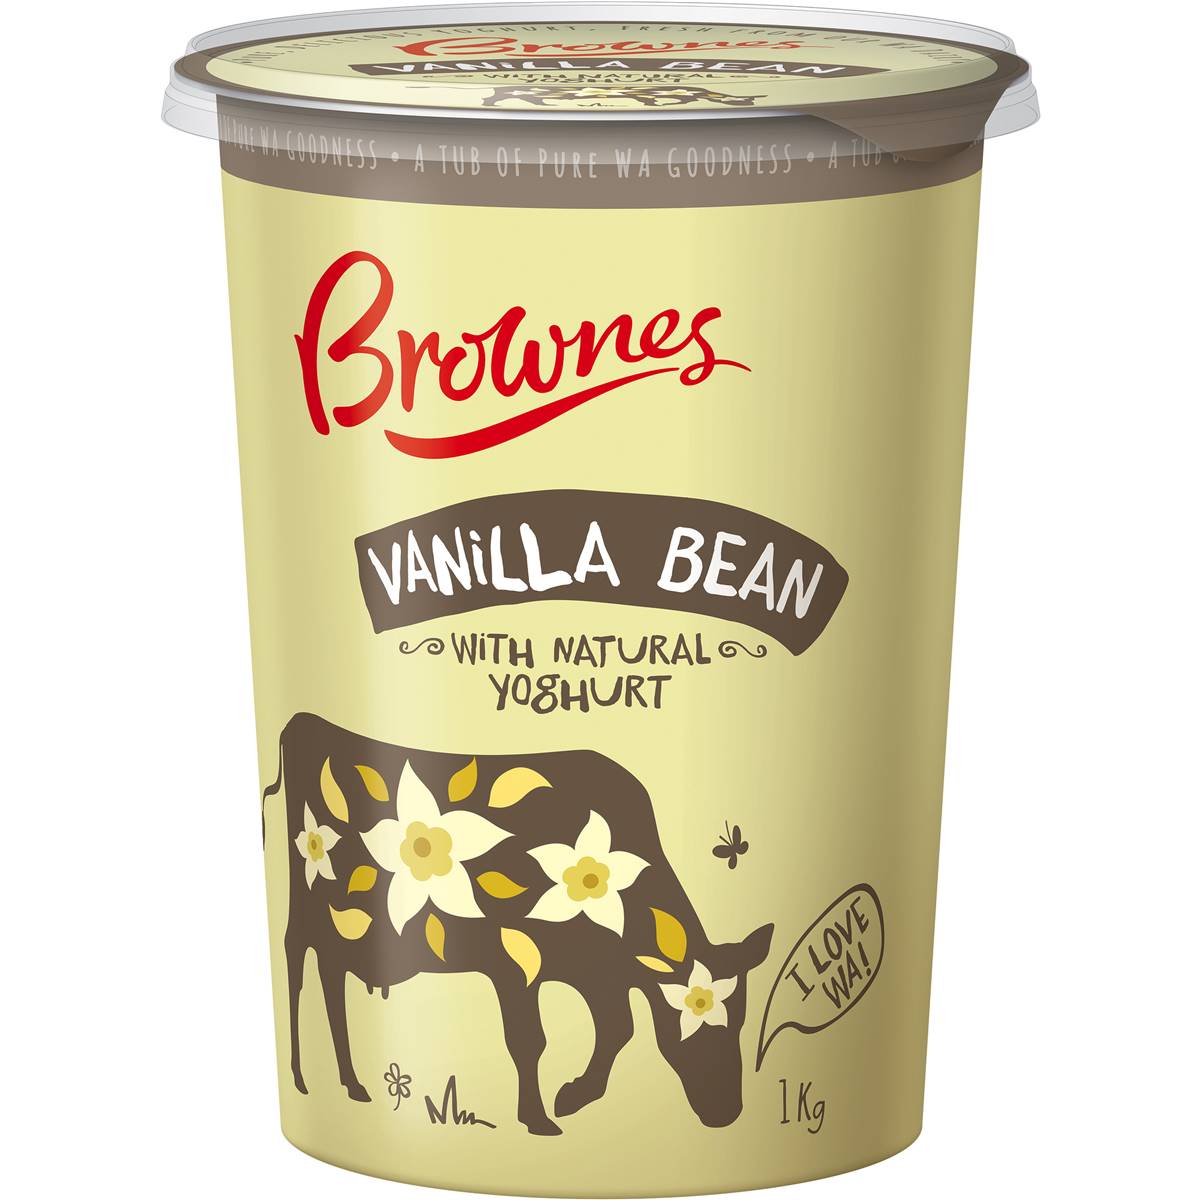 Brownes Vanilla Bean Yoghurt 1kg